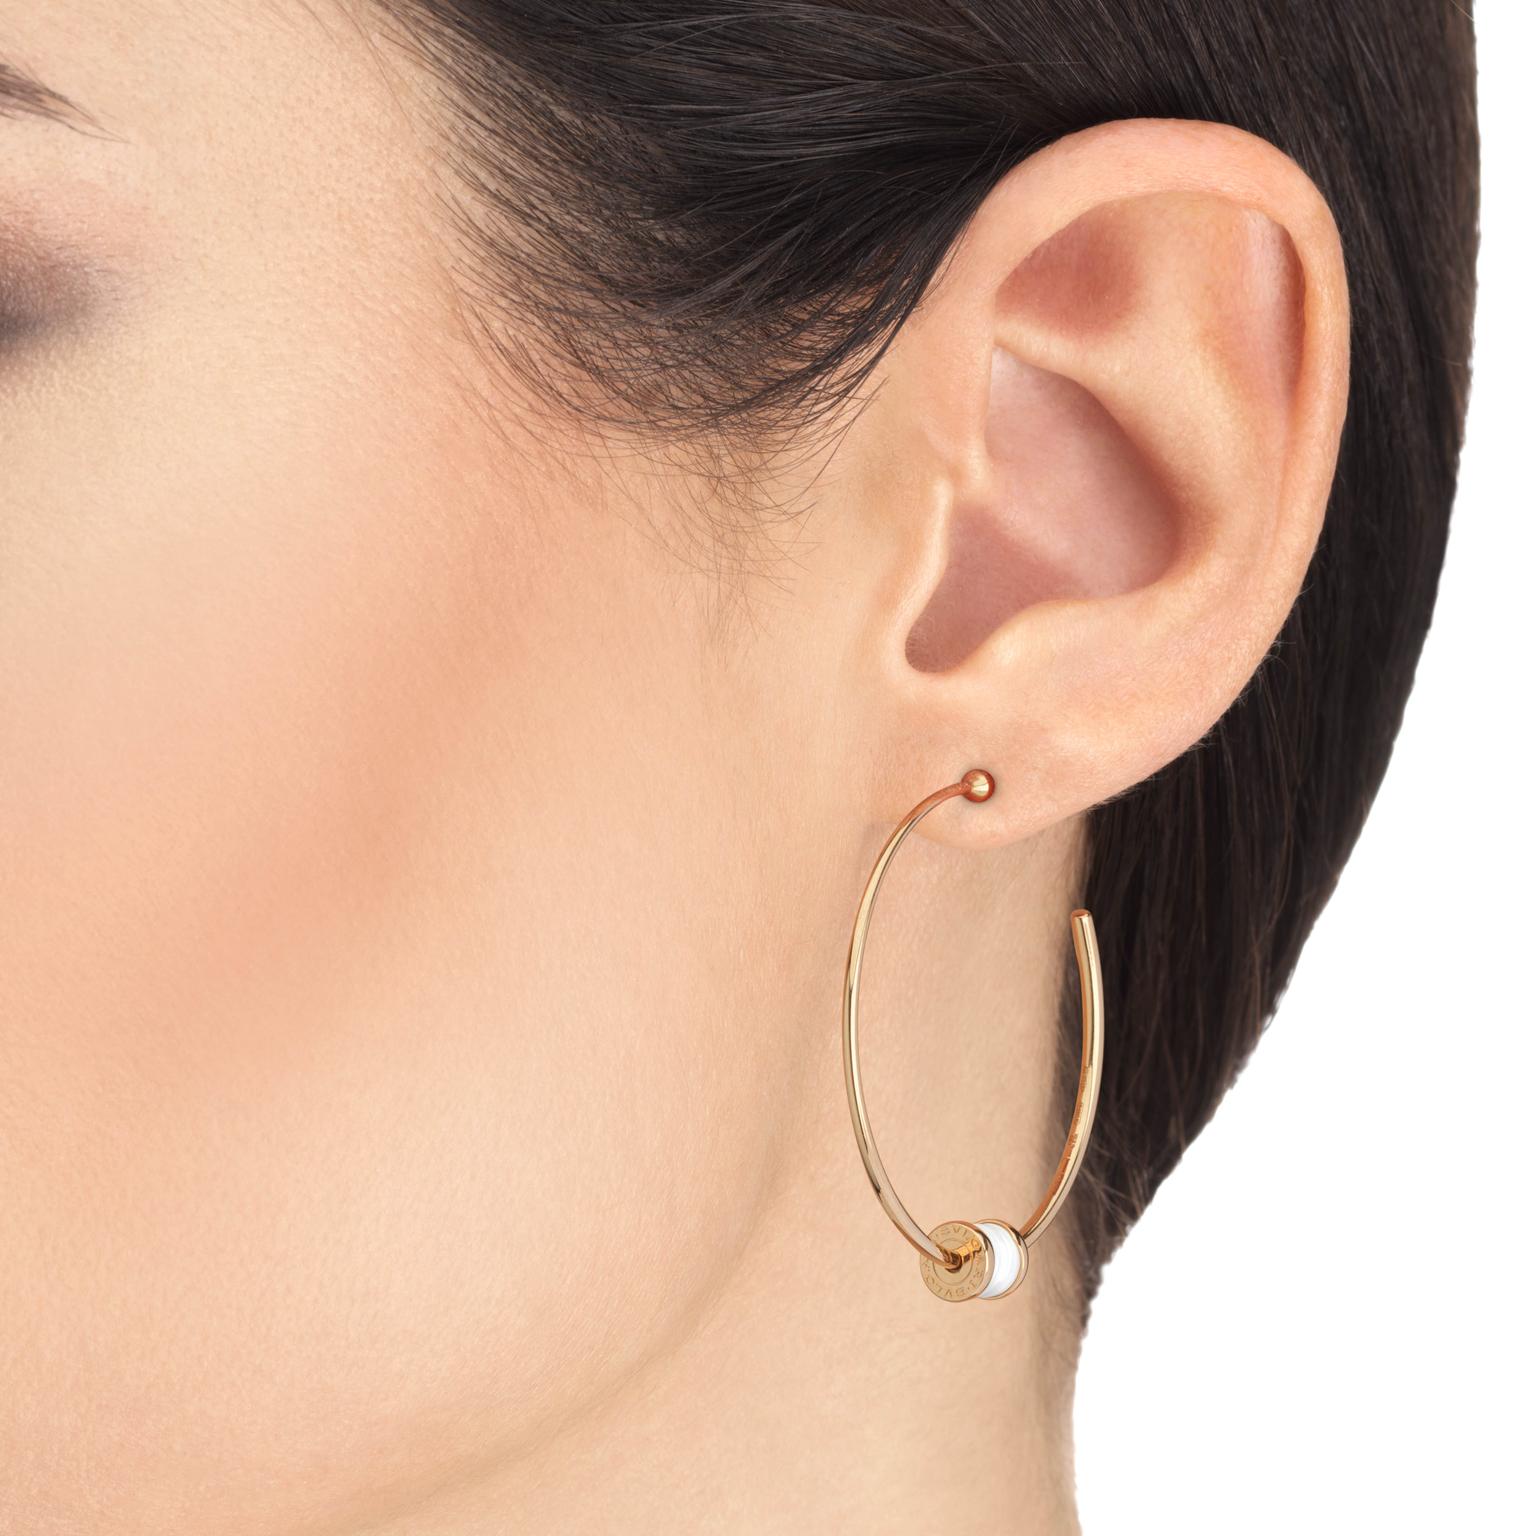 BZezo1 hoop earrings by Bulgari on model